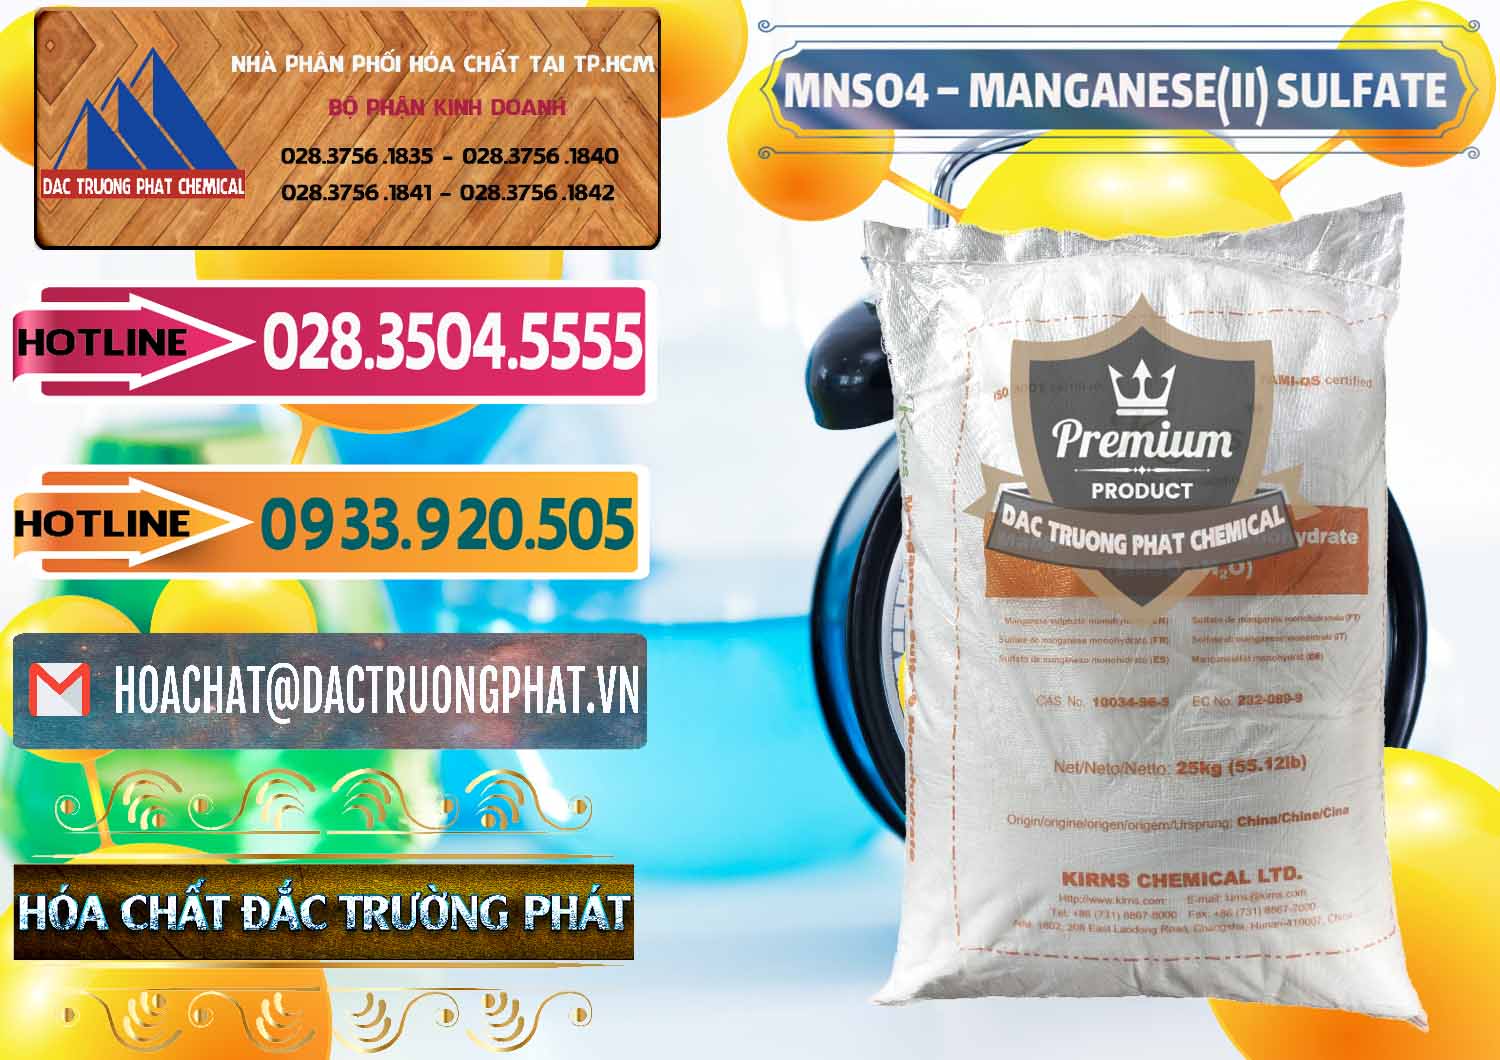 Công ty chuyên phân phối ( bán ) MNSO4 – Manganese (II) Sulfate Kirns Trung Quốc China - 0095 - Cty chuyên phân phối _ kinh doanh hóa chất tại TP.HCM - dactruongphat.vn